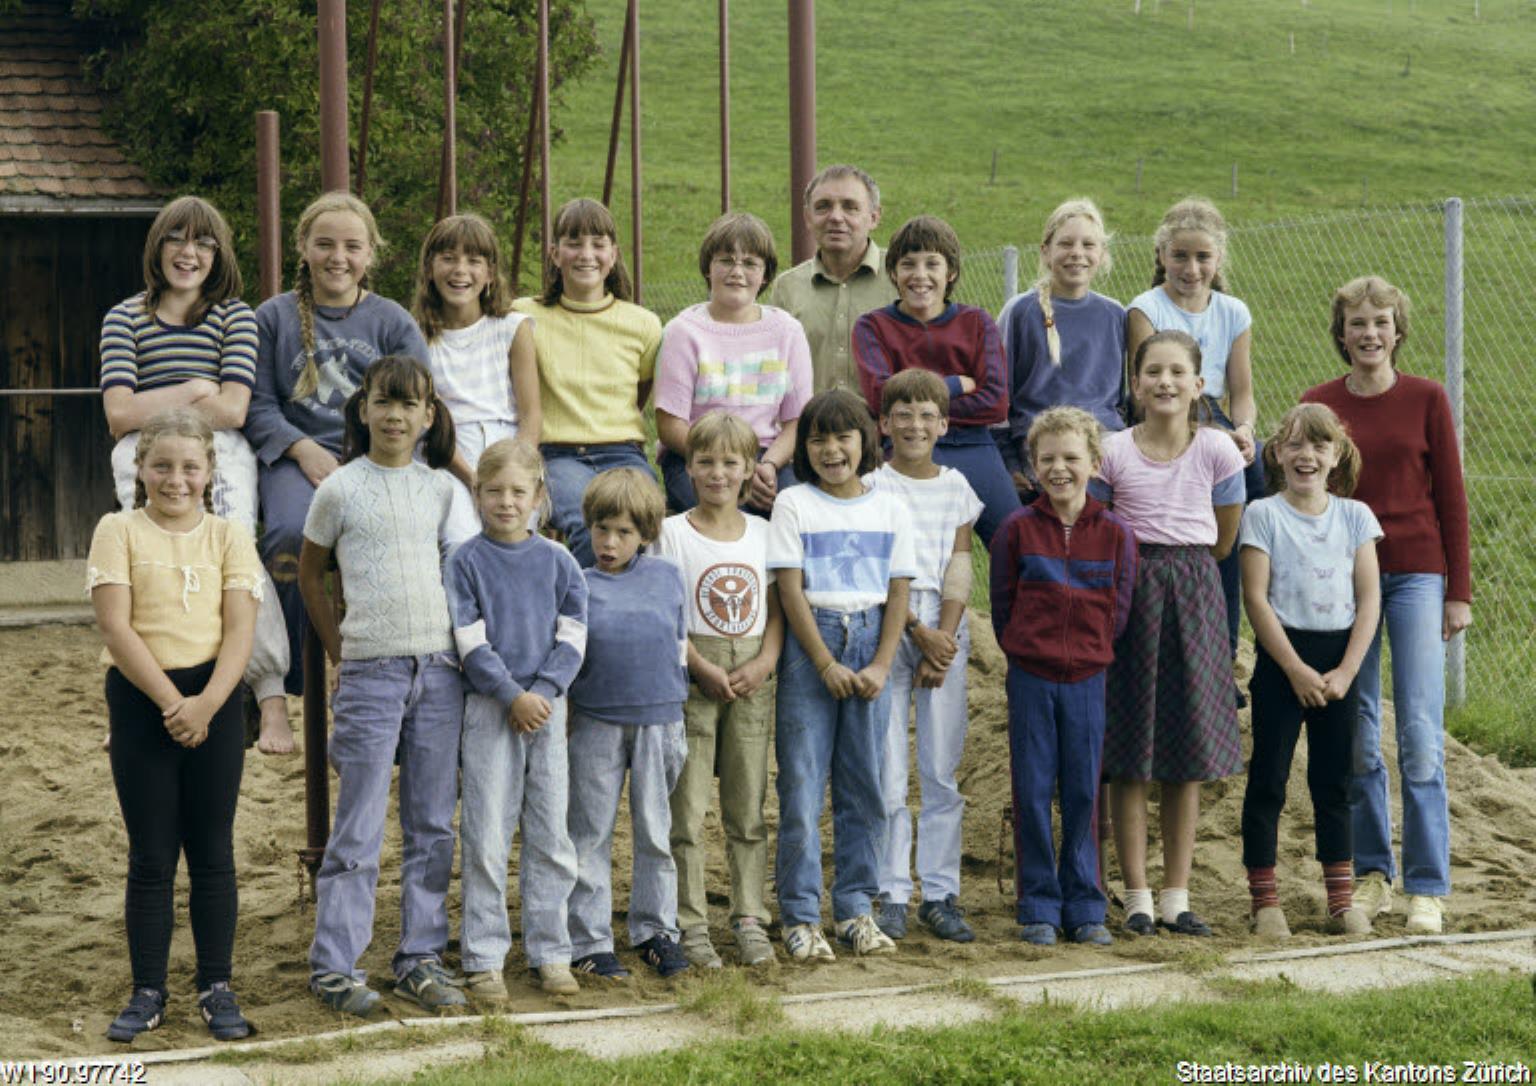 Primarschule Berg, Hansueli Kuhn, 1985